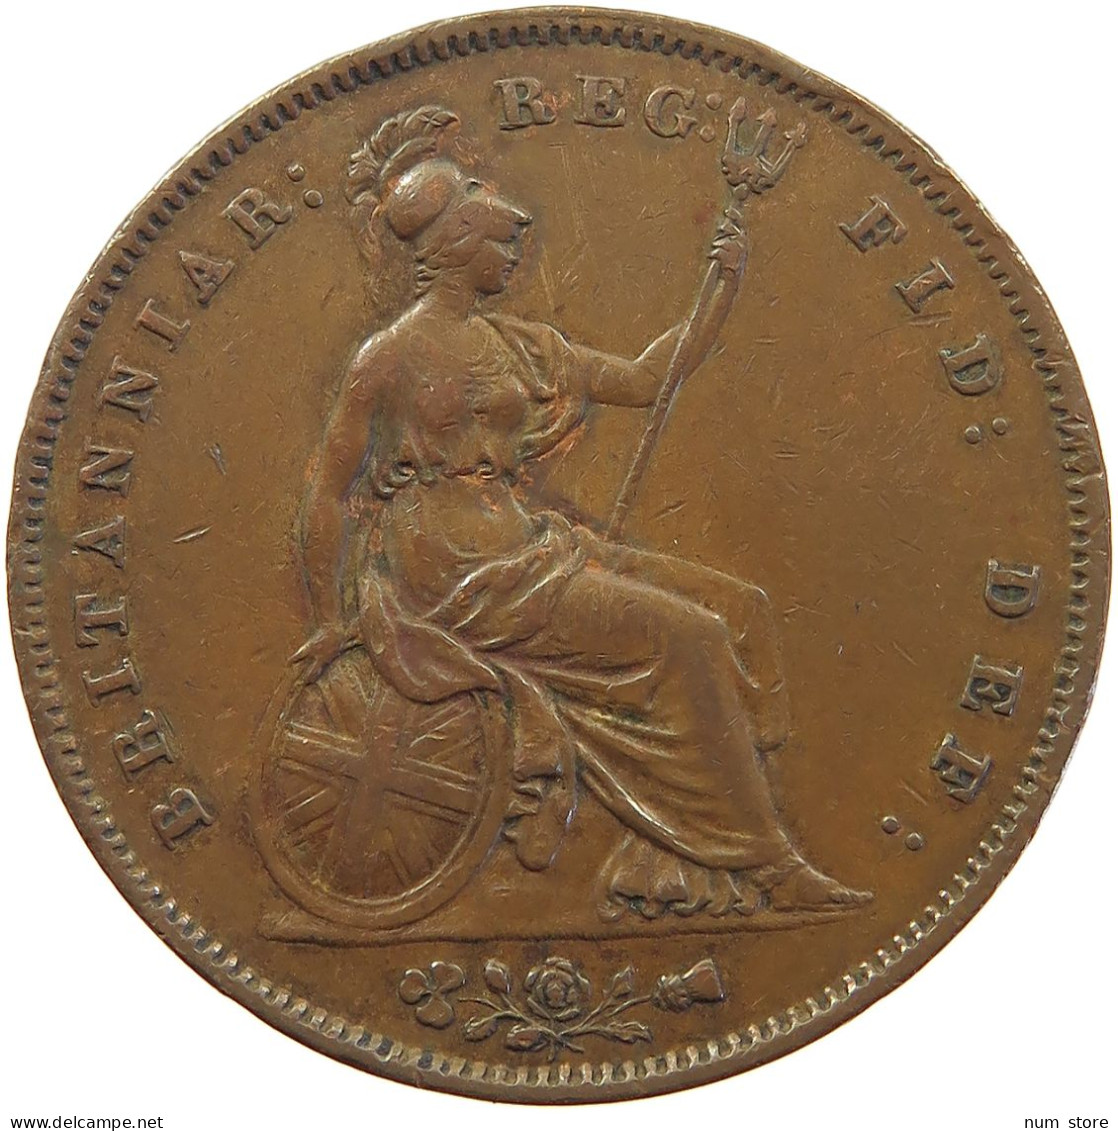 GREAT BRITAIN HALFPENNY 1858 Victoria 1837-1901 #sm05 0317 - C. 1/2 Penny